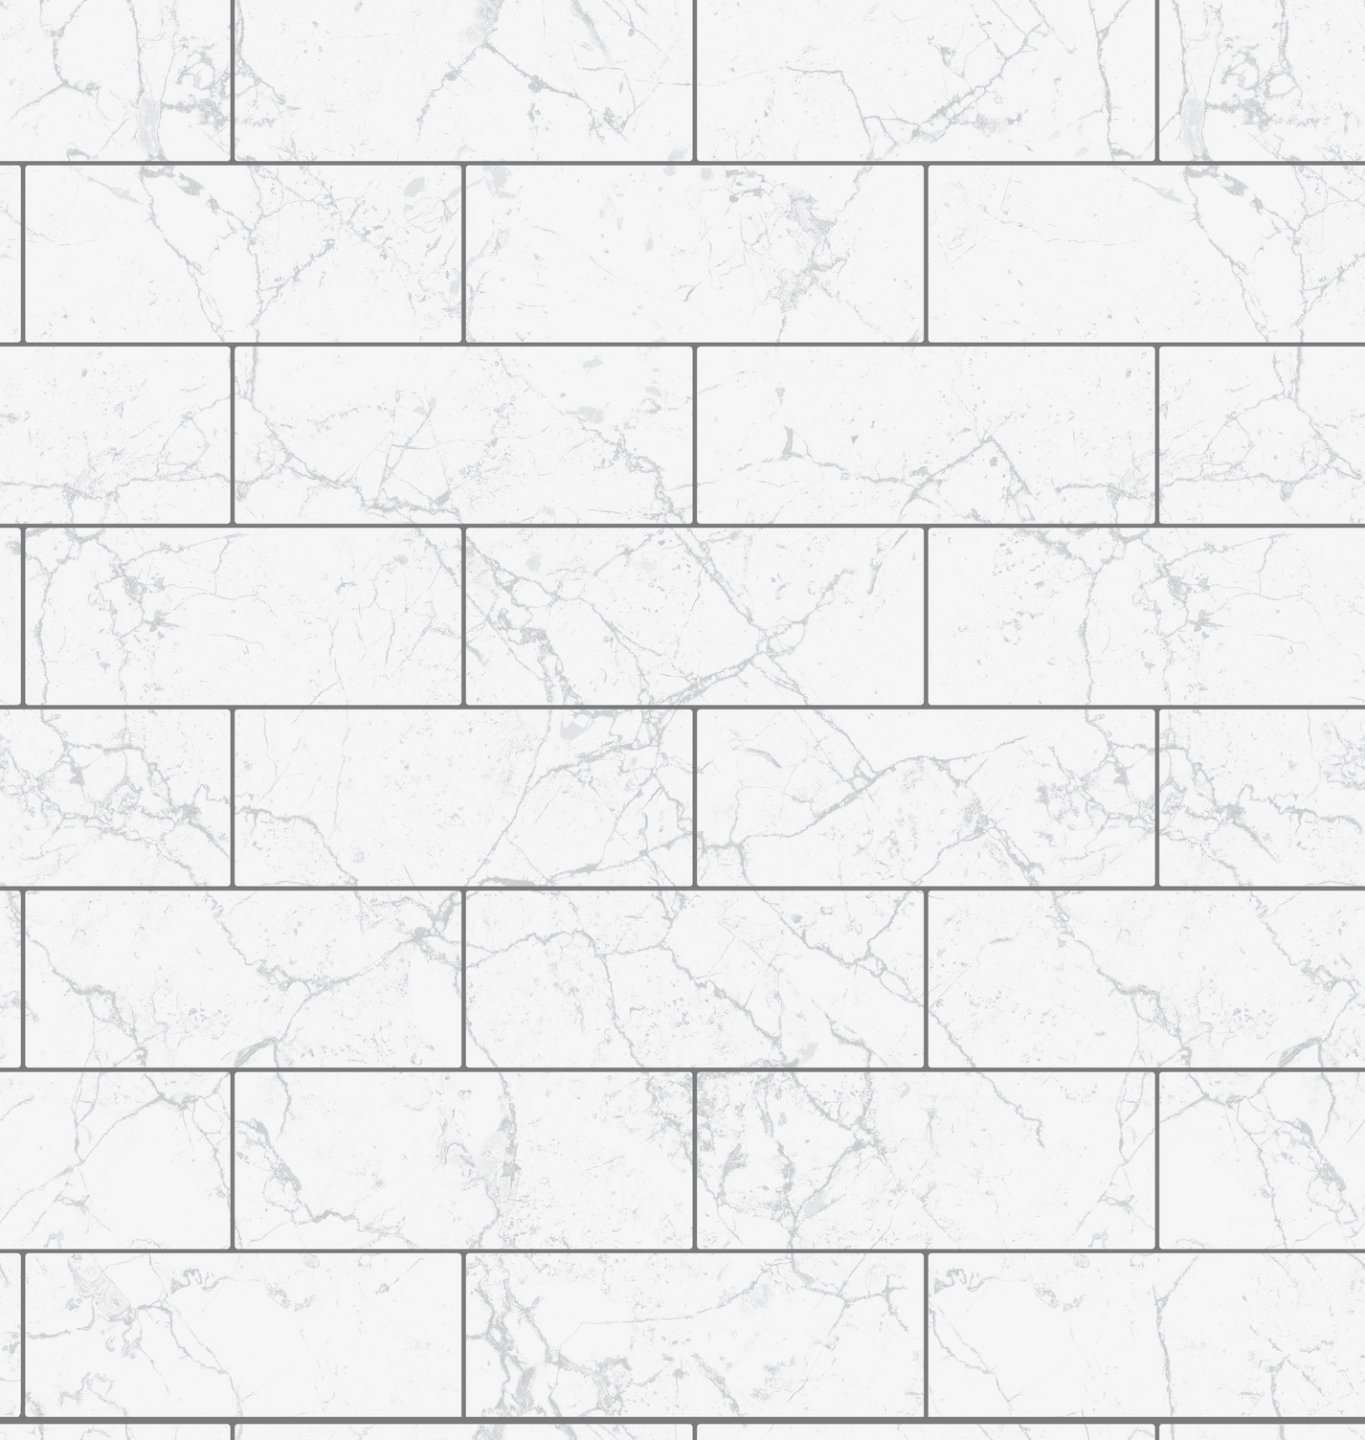 Stěnový obklad Ceramics bílé cihly s šedým mramorem 270-0175 šířka 67,5 cm, metráž / do kuchyně, koupelny vinylová tapeta na metry 2700175 D-c-fix